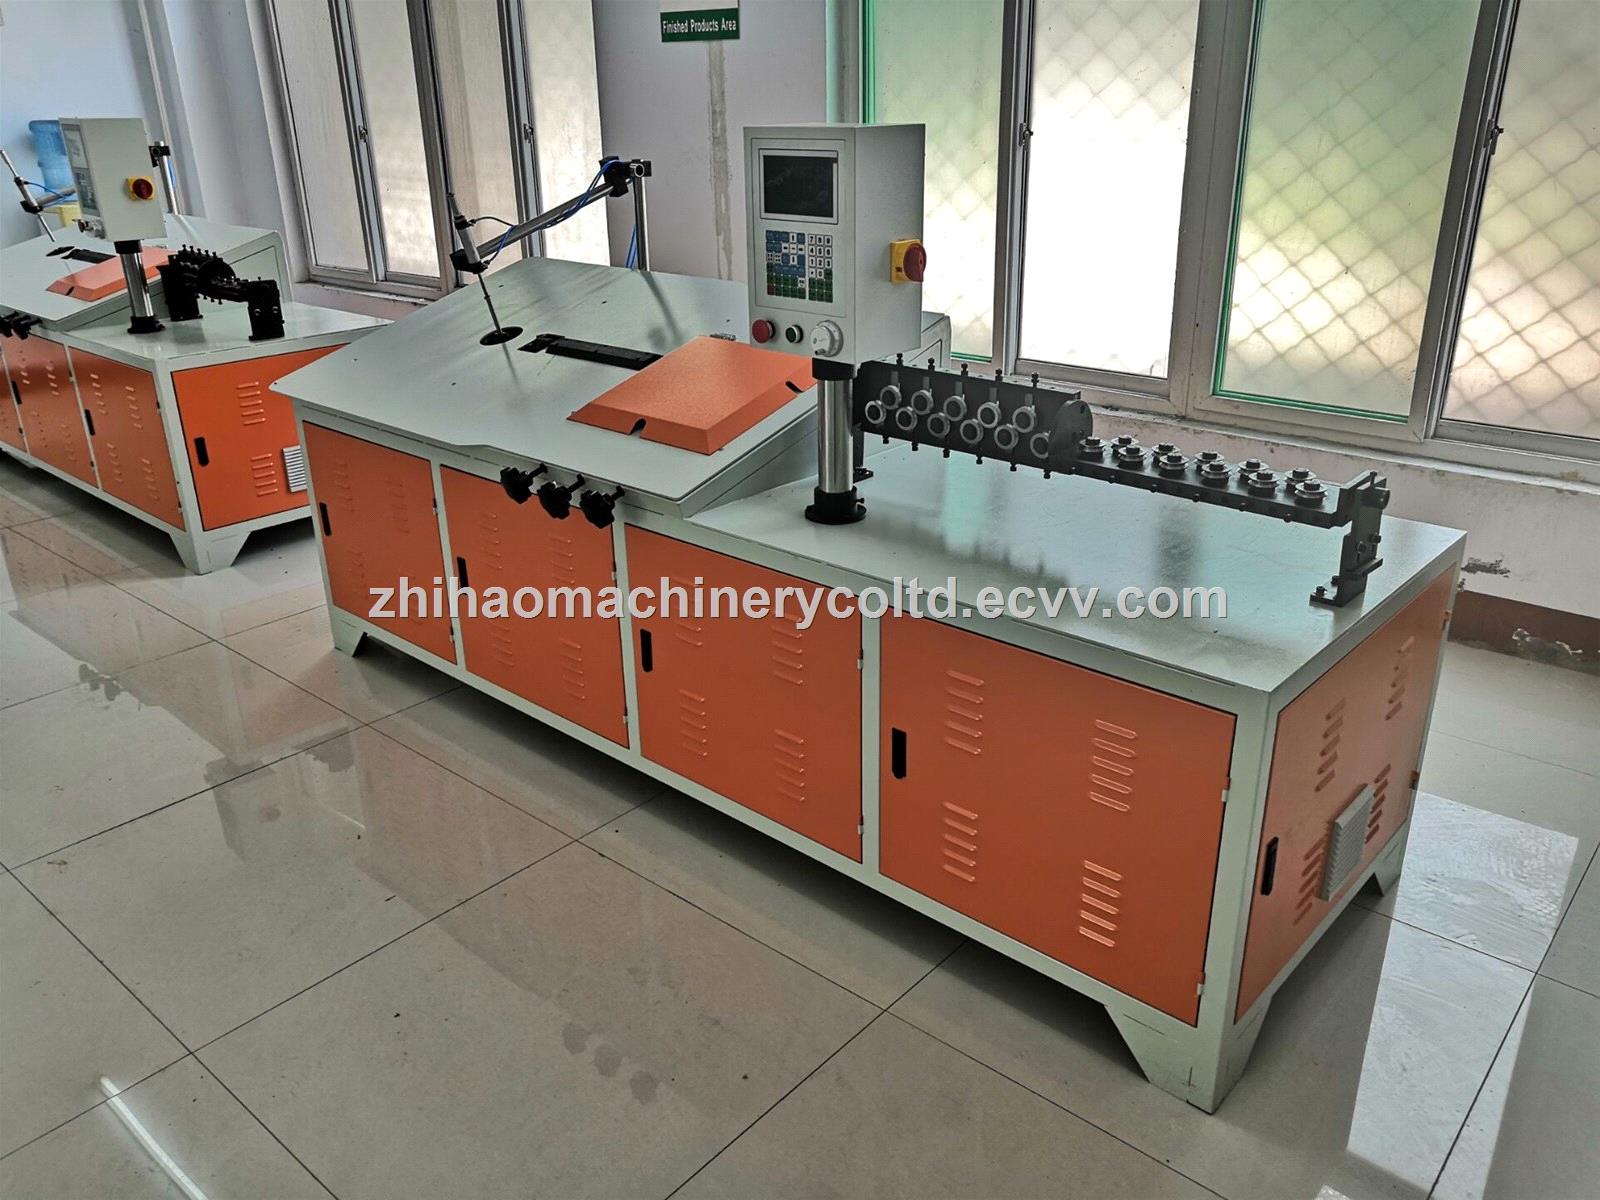 China zhihaomachinery 2d CNC wire bending machine